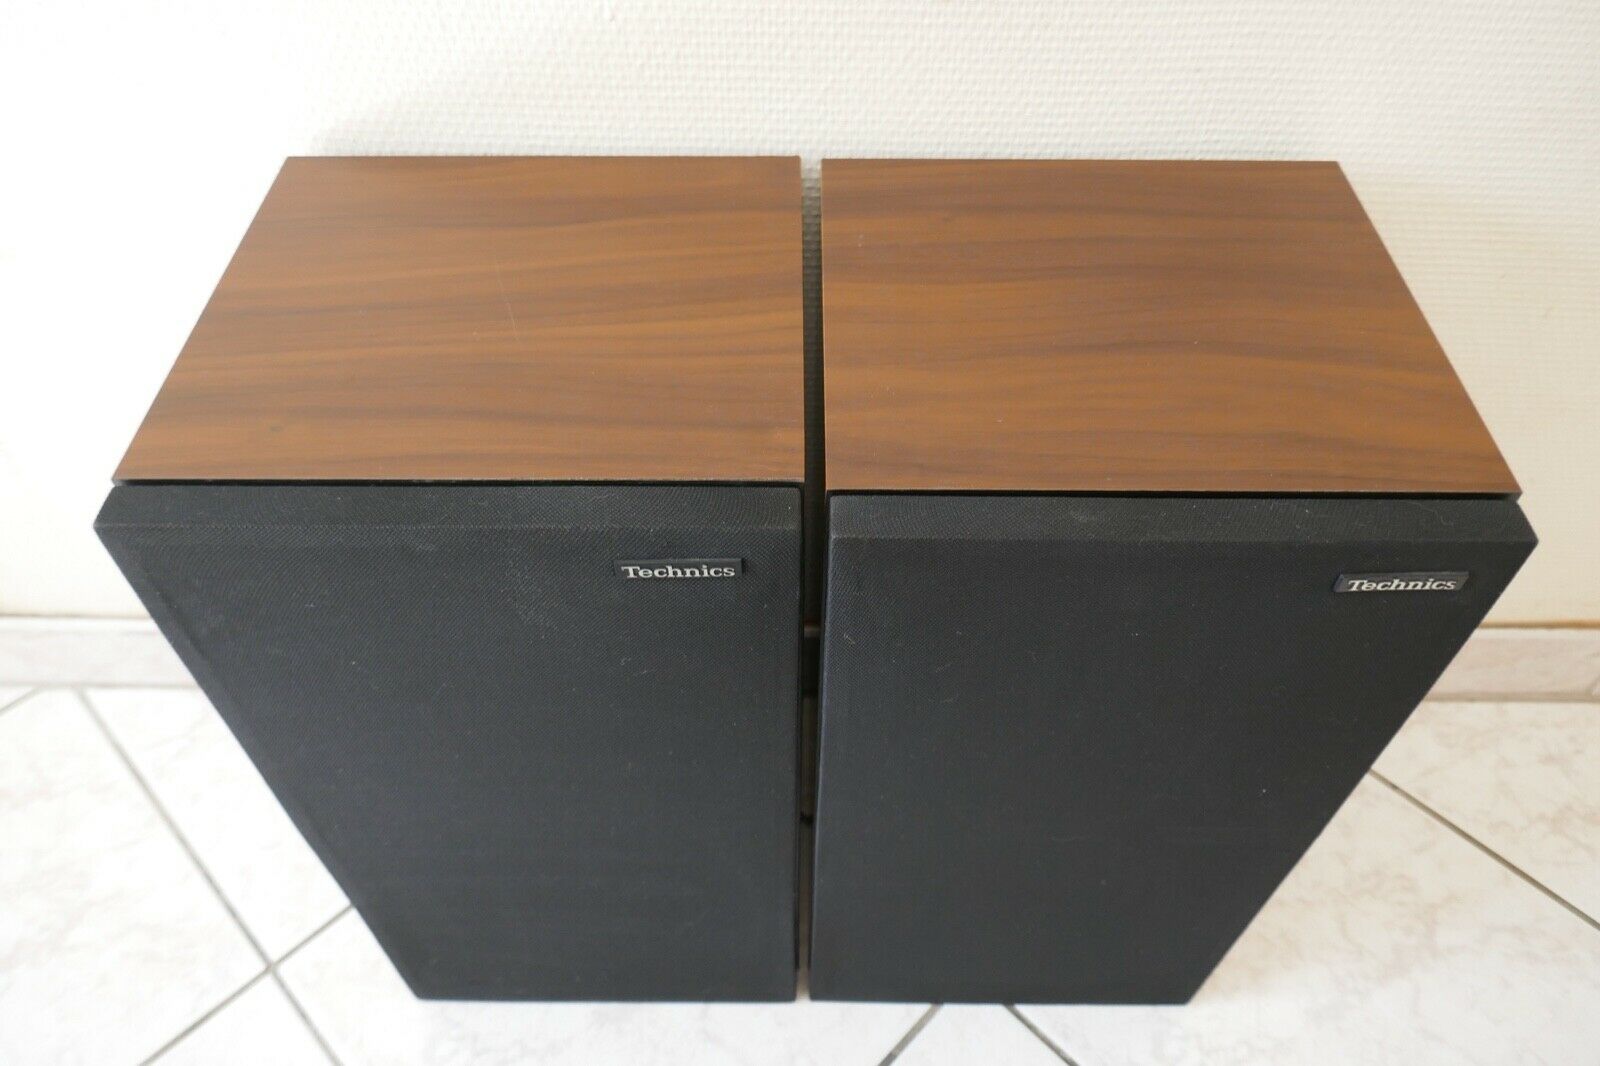 enceintes speakers technics SB-3030 vintage occasion